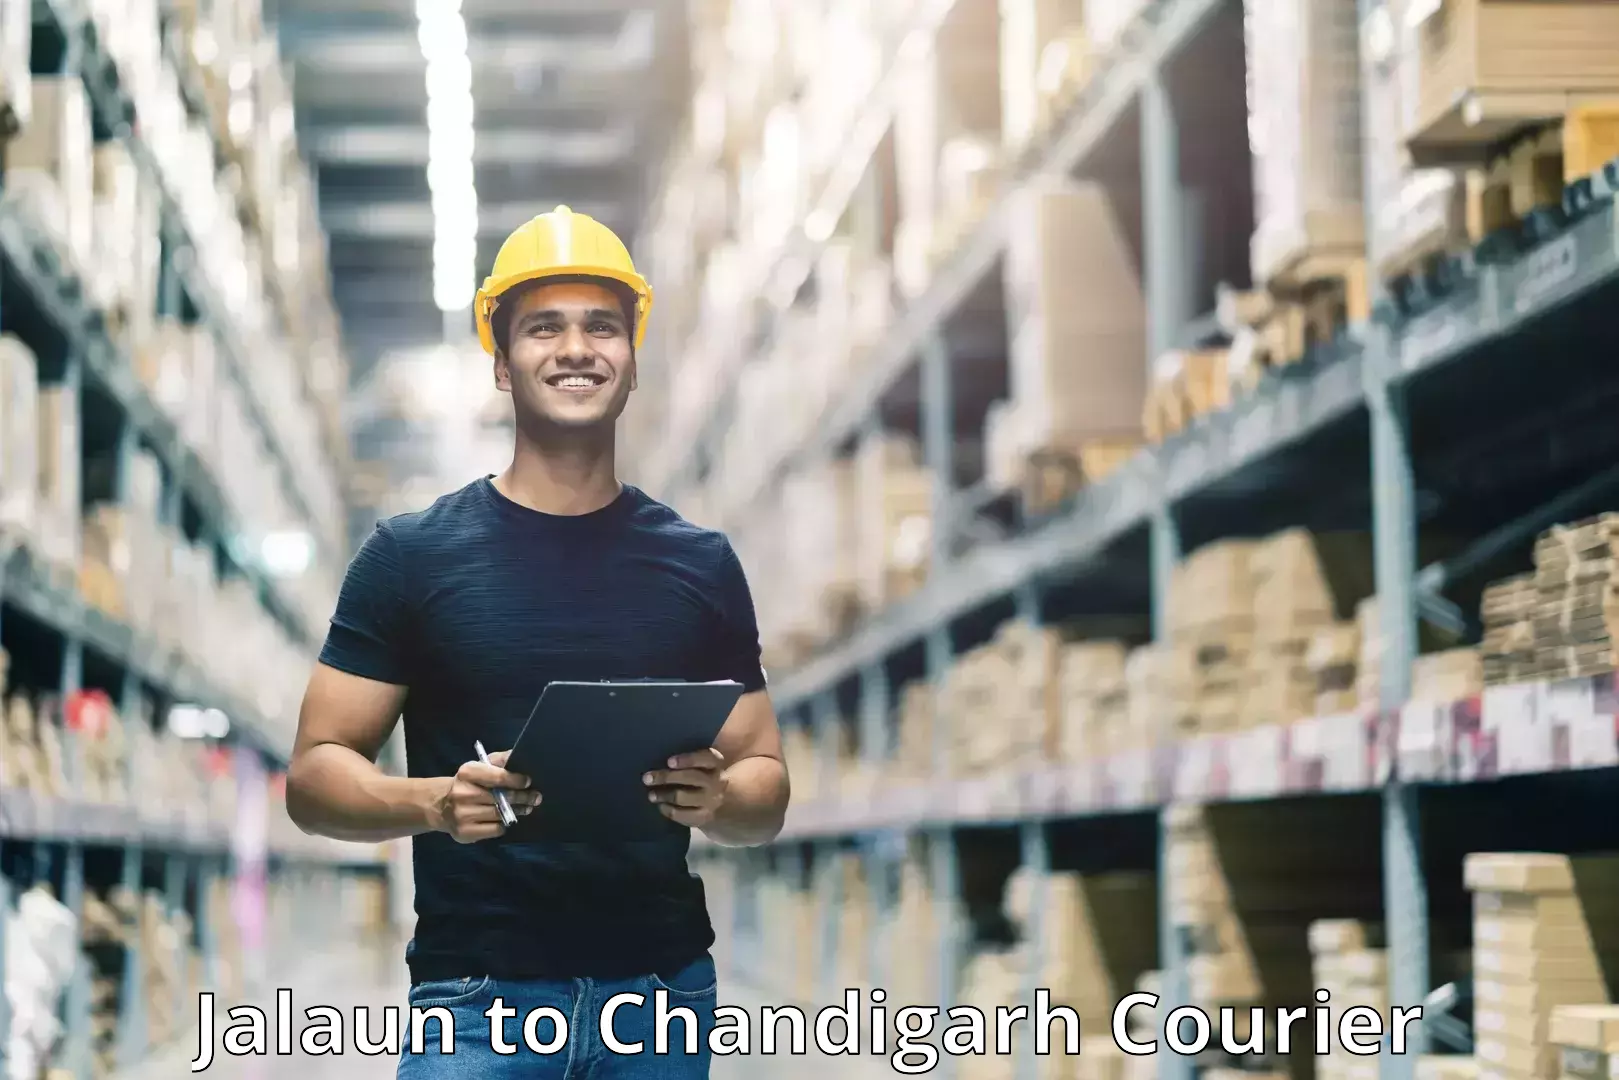 Advanced shipping network Jalaun to Chandigarh